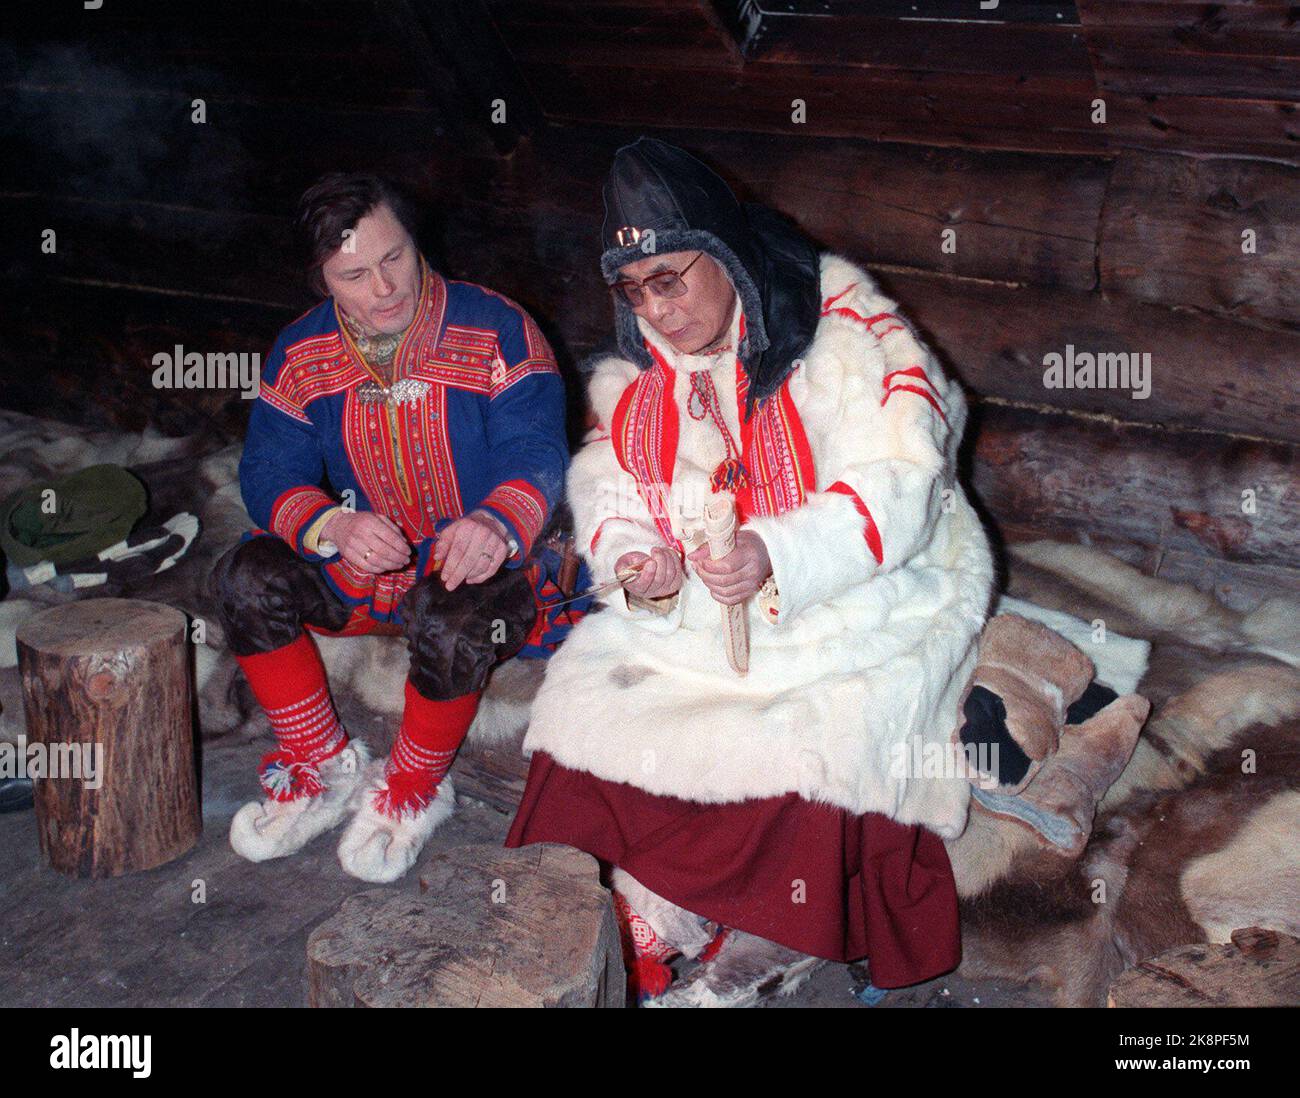 Karasjok 198912 : Prix Nobel de la paix 1989 au Dalaï Lama. La photo : le Dalaï Lama visite des Samis à Karasjok. Bien enveloppé dans des vêtements de peaux de rennes a achevé le Dalaï Lama un programme limité à Karasjok. Il était près de 40 degrés Celsius à Karasjok ce jour-là. Le Dalaï Lama a reçu son couteau personnel portant le nom gravé lorsqu'il, avec le chef sami Ole Henrik Magga, a visité une même vieille-vieille-vieille-vieille-vieille-vieille-vieille-mode. Photo: Eystein Hanssen. Banque D'Images